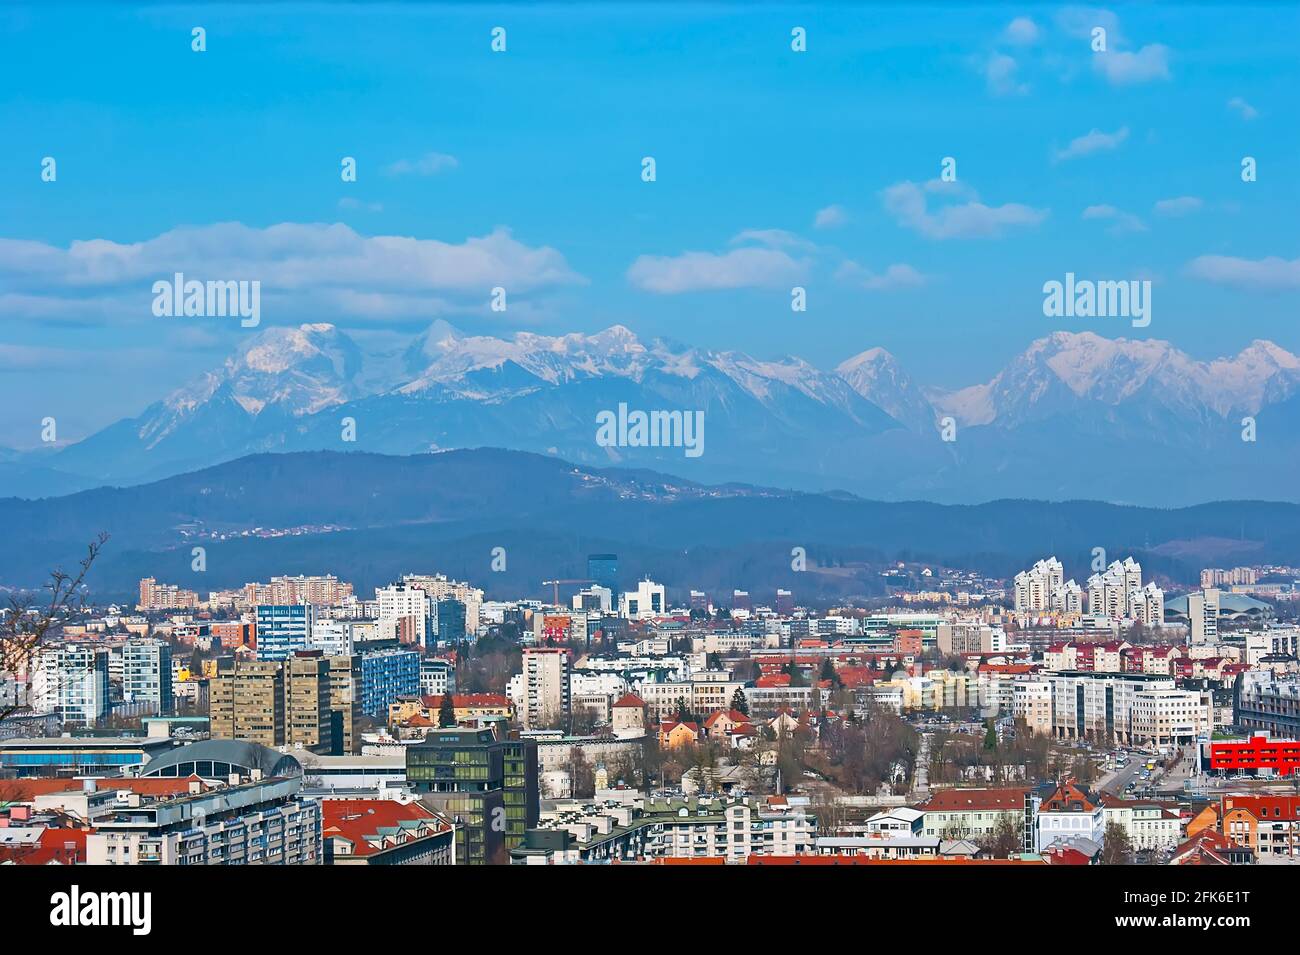 Disfrute de las vistas desde la Torre Panorámica del Castillo de Ljubljana, que observa los distritos de la ciudad y la cordillera de los Alpes Julianos en el fondo, S Foto de stock